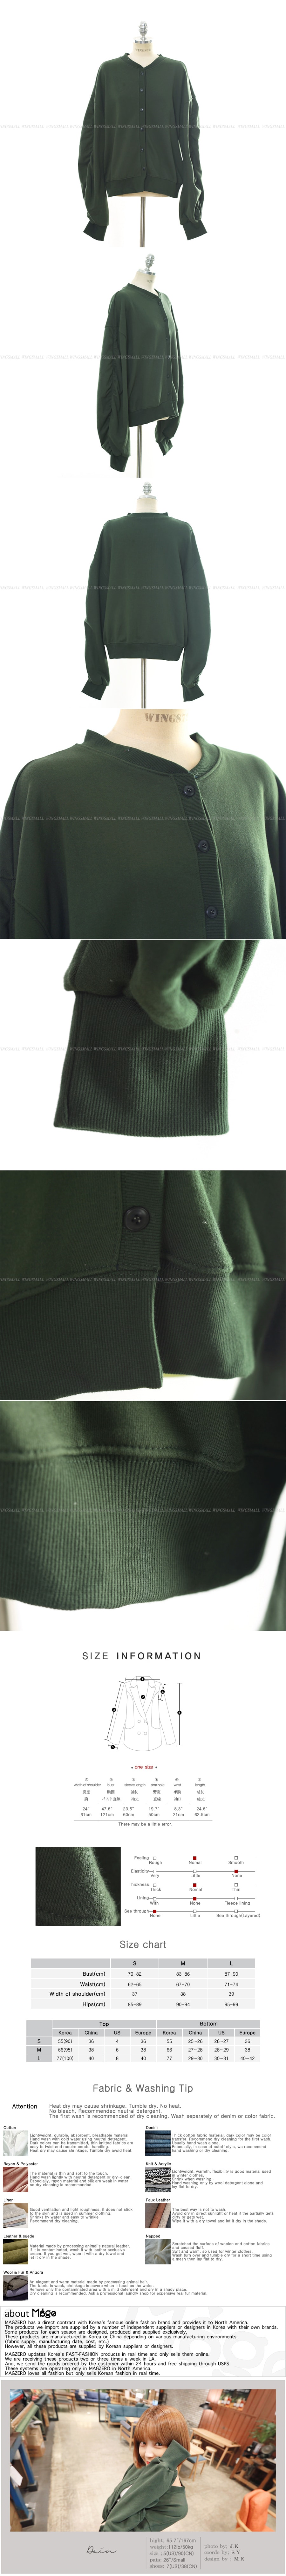 [Autumn New] Shirring Sleeve Sweatshirt Jacket Khaki One Size(Free)